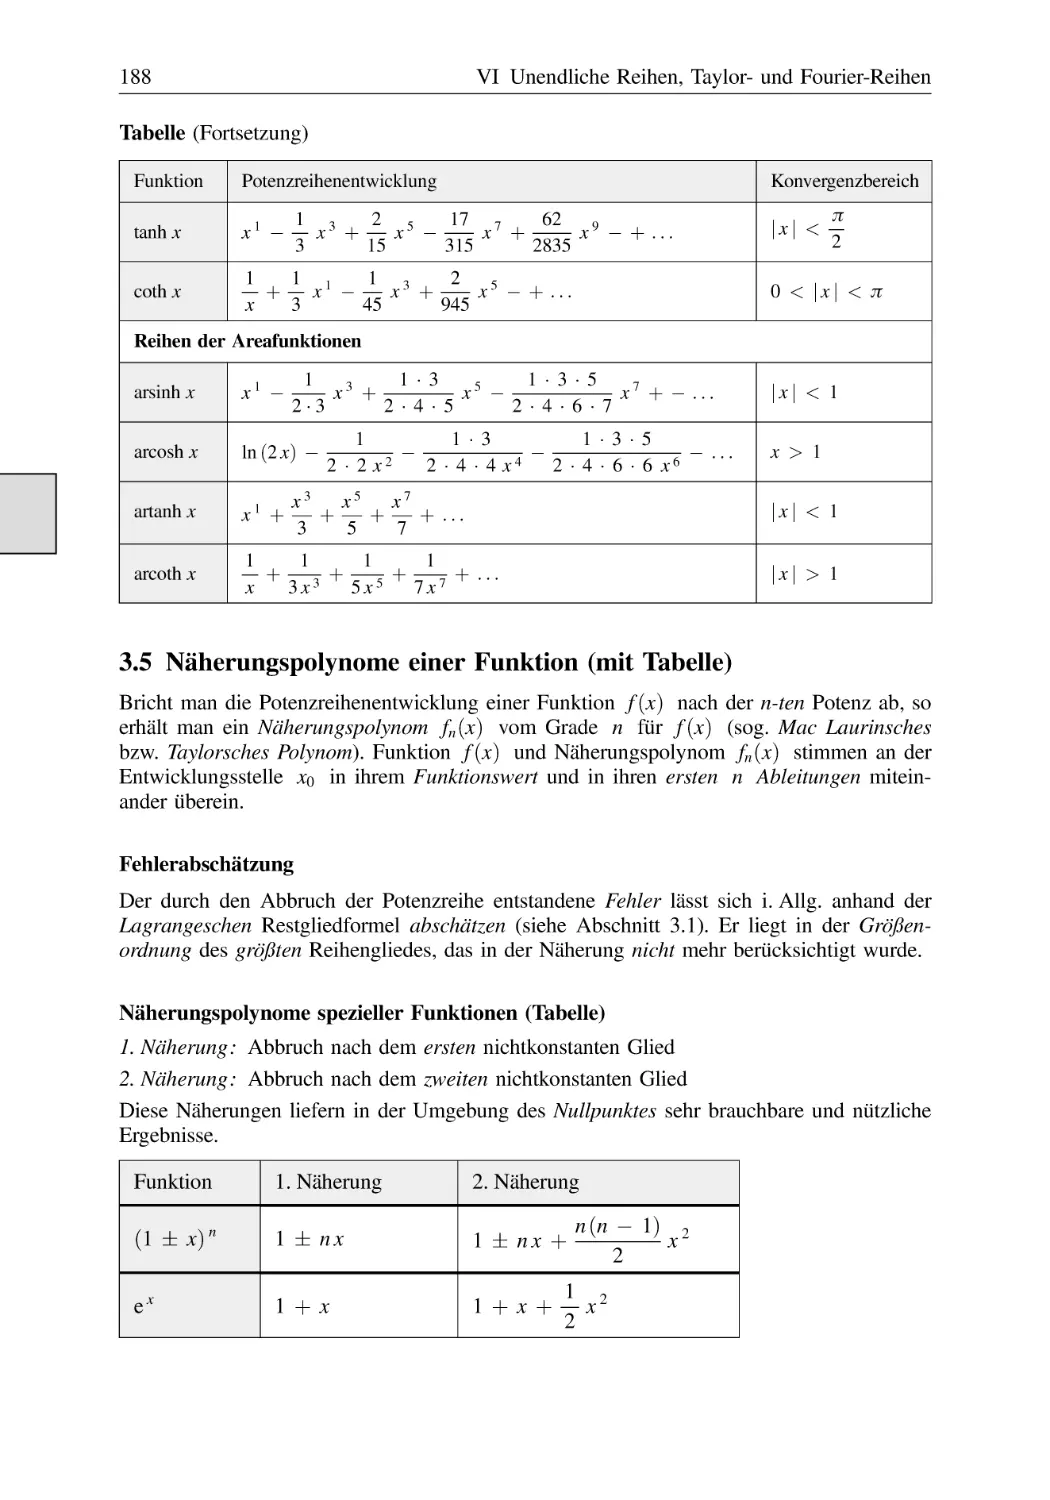 3.5 Näherungspolynome einer Funktion (mit Tabelle)